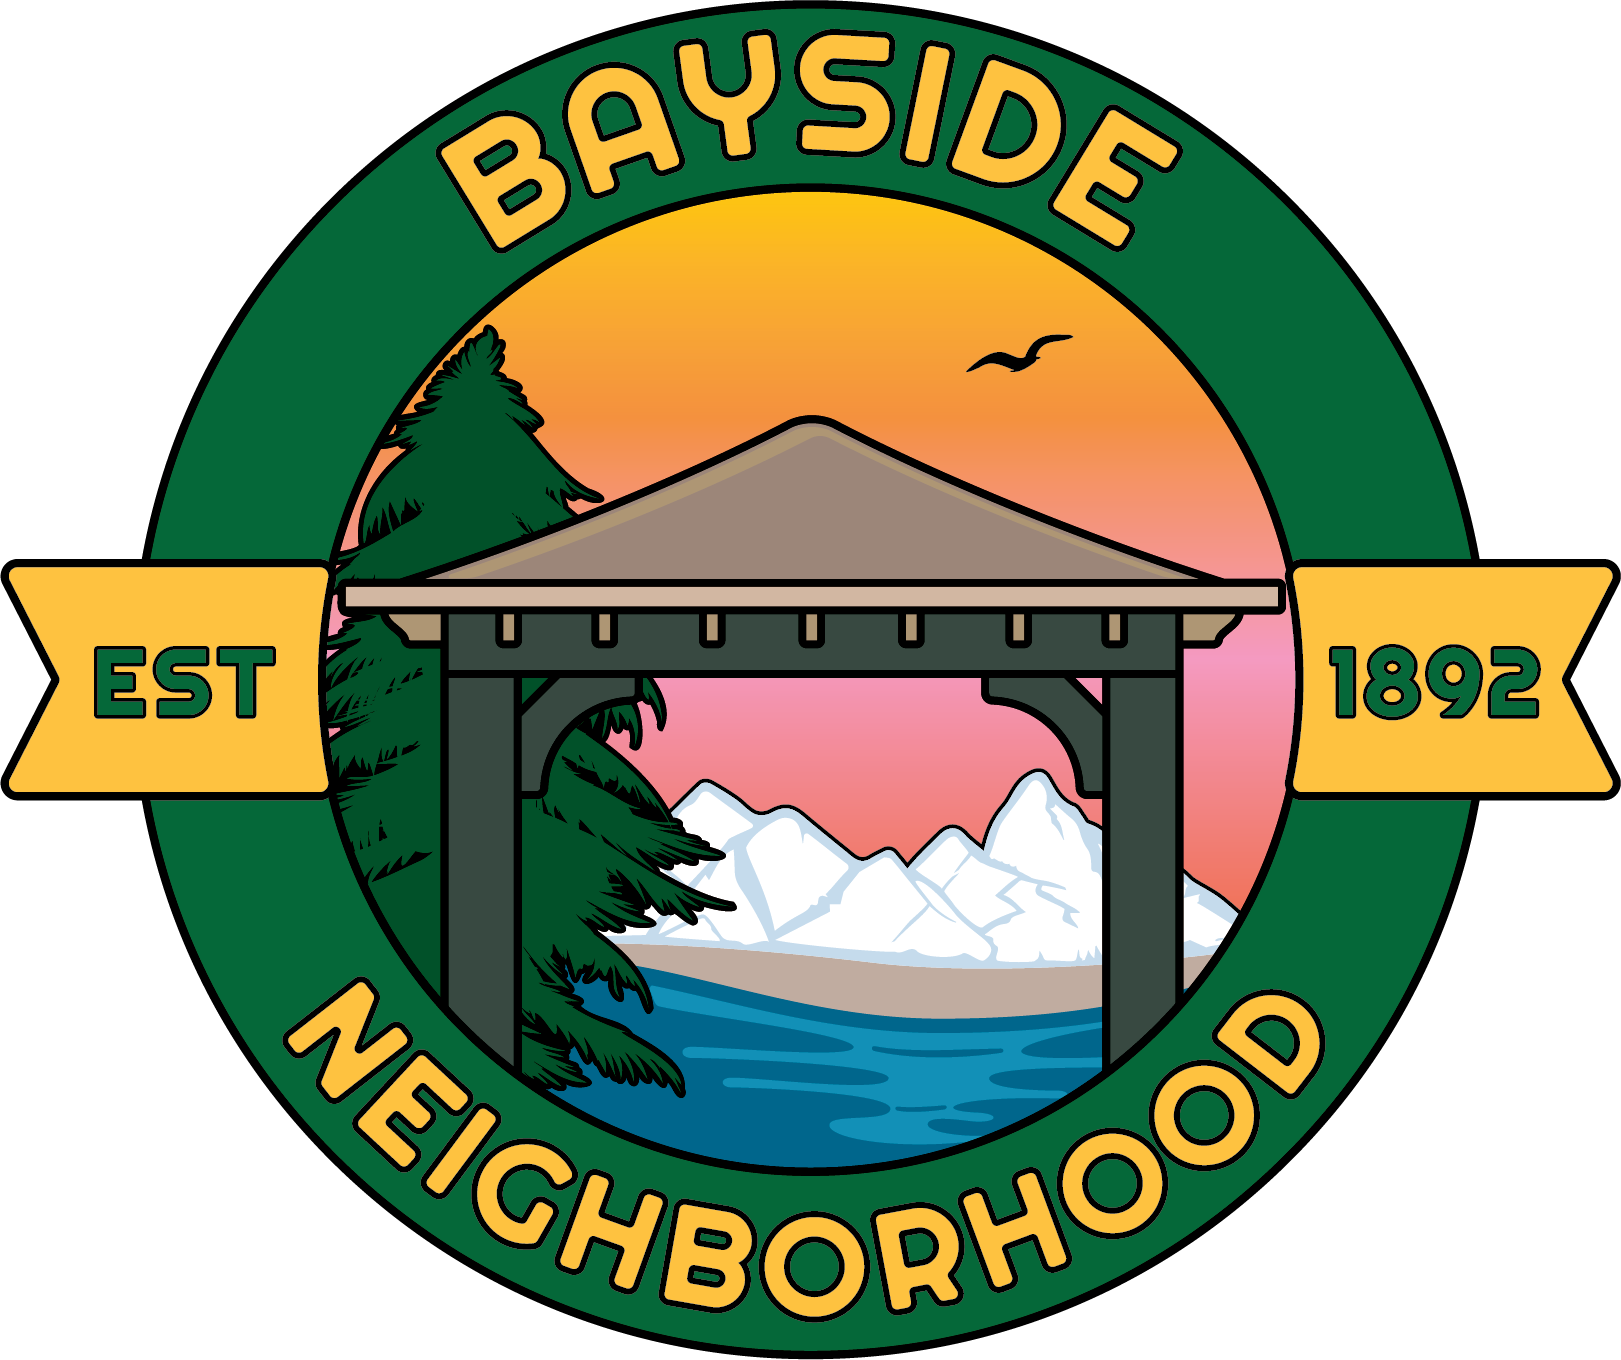 Bayside Neighborhood Association